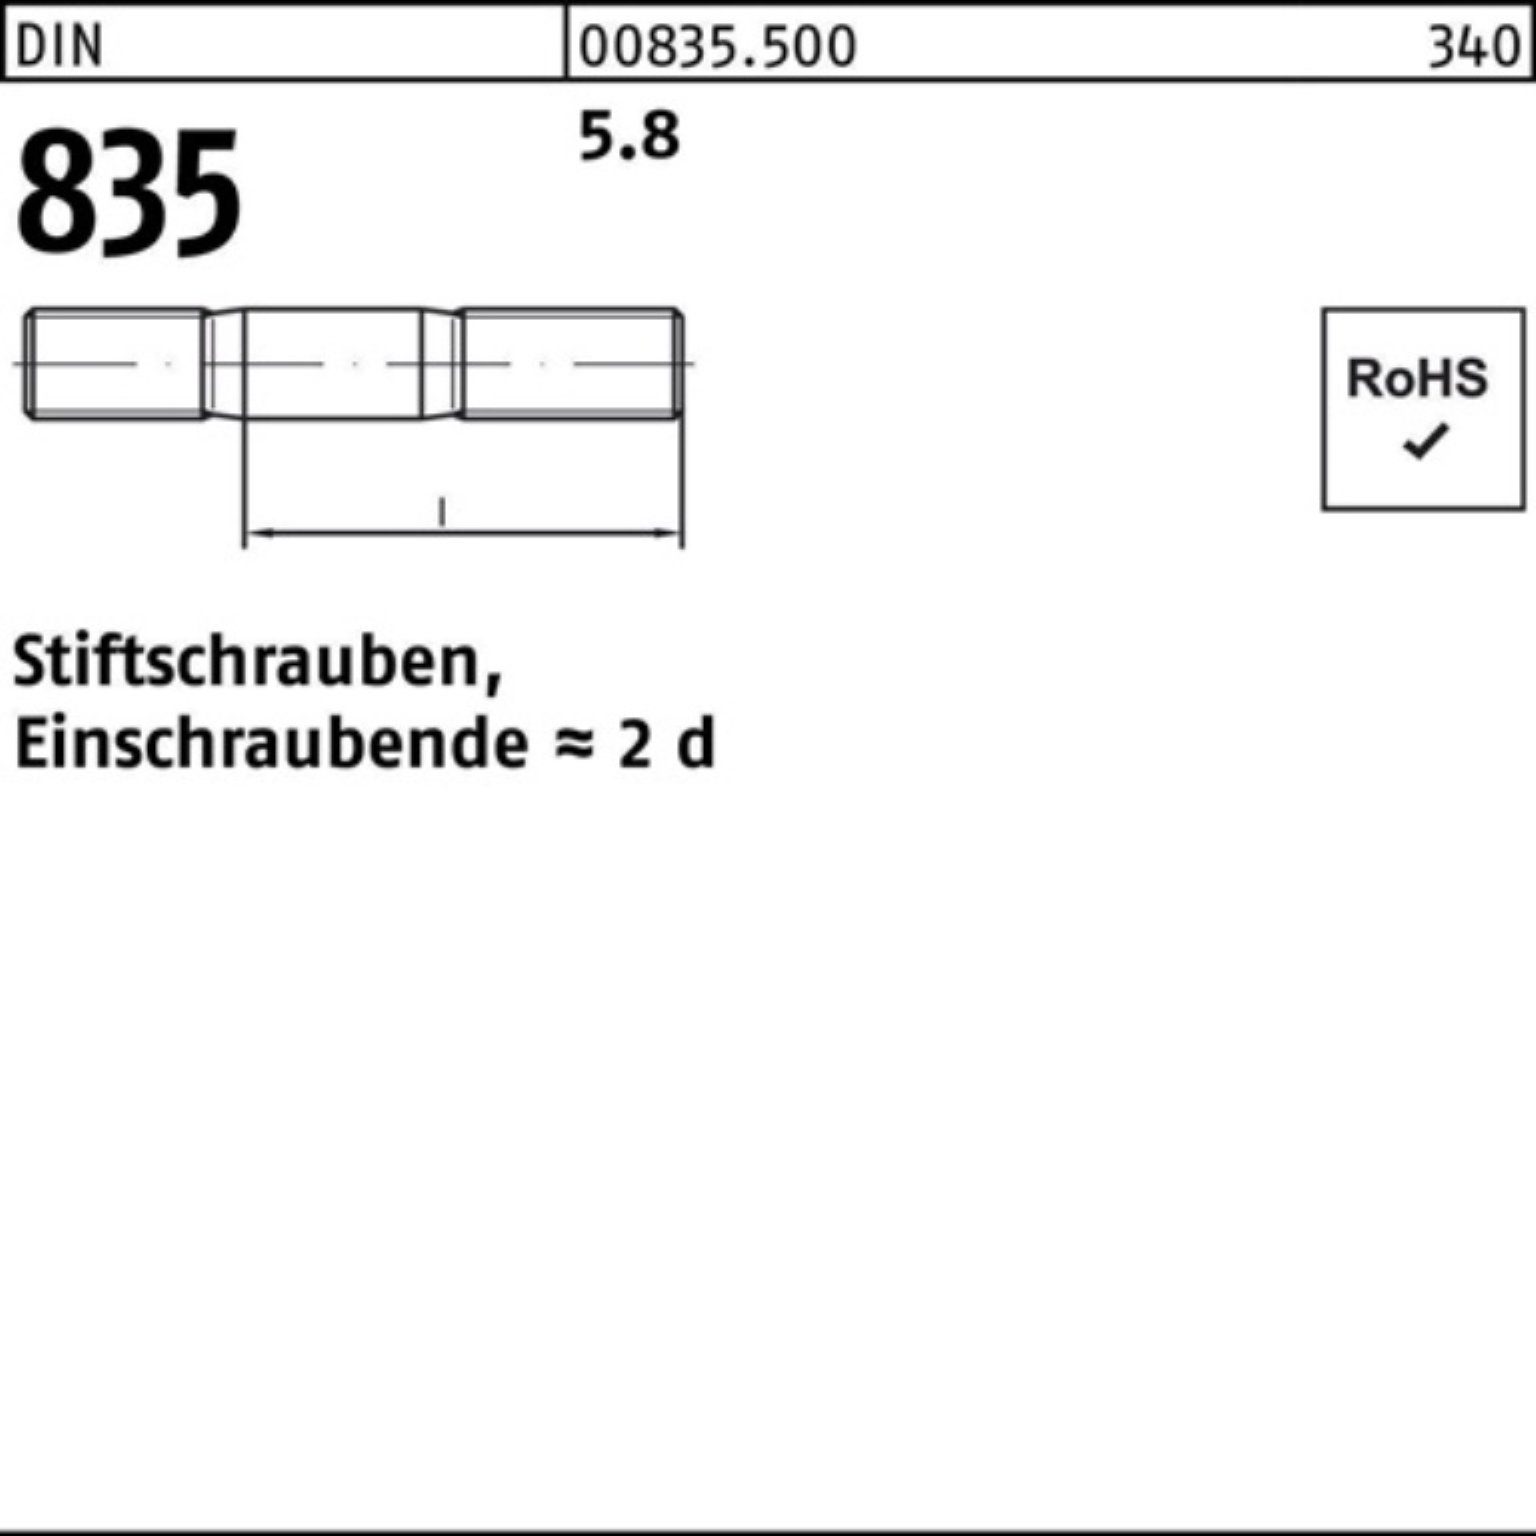 St Stiftschraube Stiftschraube 100er M10x 5.8 Pack 835 Reyher 100 Einschraubende=2d DIN 20